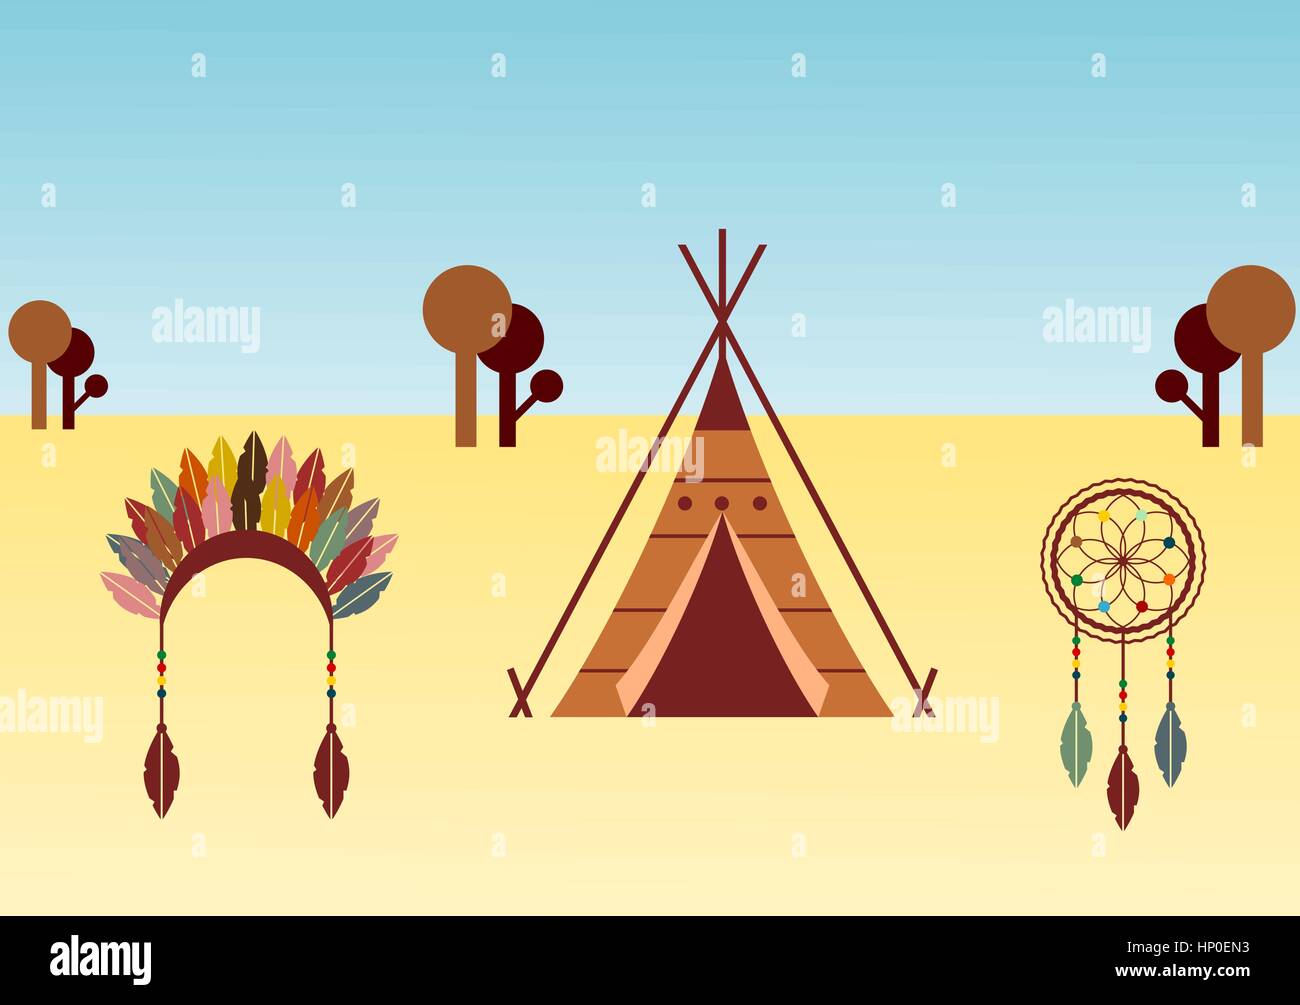 Native American themed Abbildung mit Wigwam, Dream Catcher und Kopfschmuck. Die indianische Kultur Konzept. Artwork mit ethnischen Designelemente. Stock Vektor